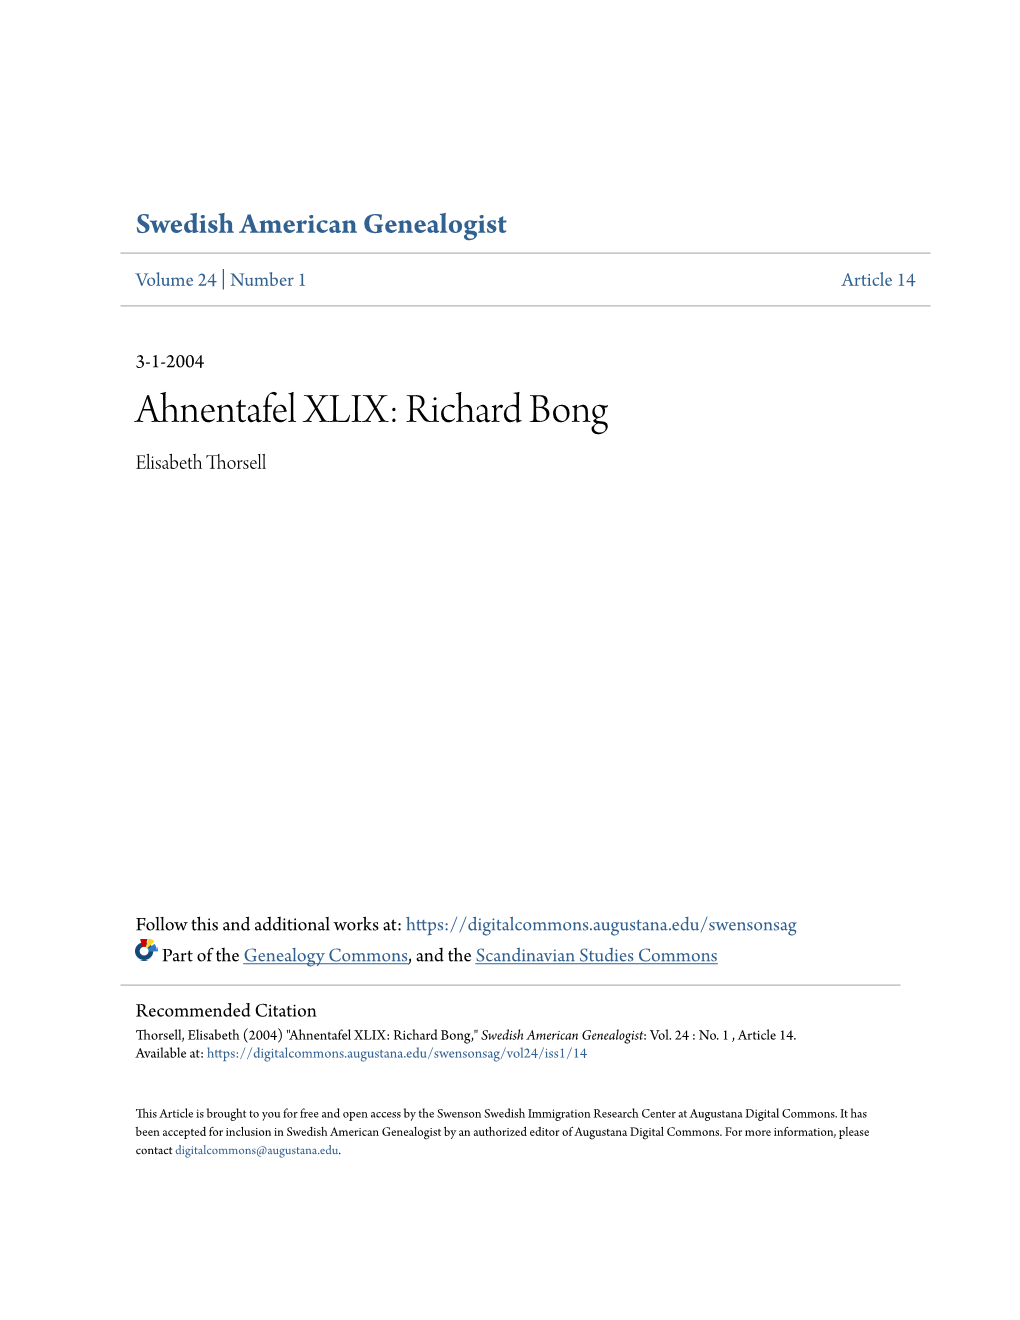 Ahnentafel XLIX: Richard Bong Elisabeth Thorsell